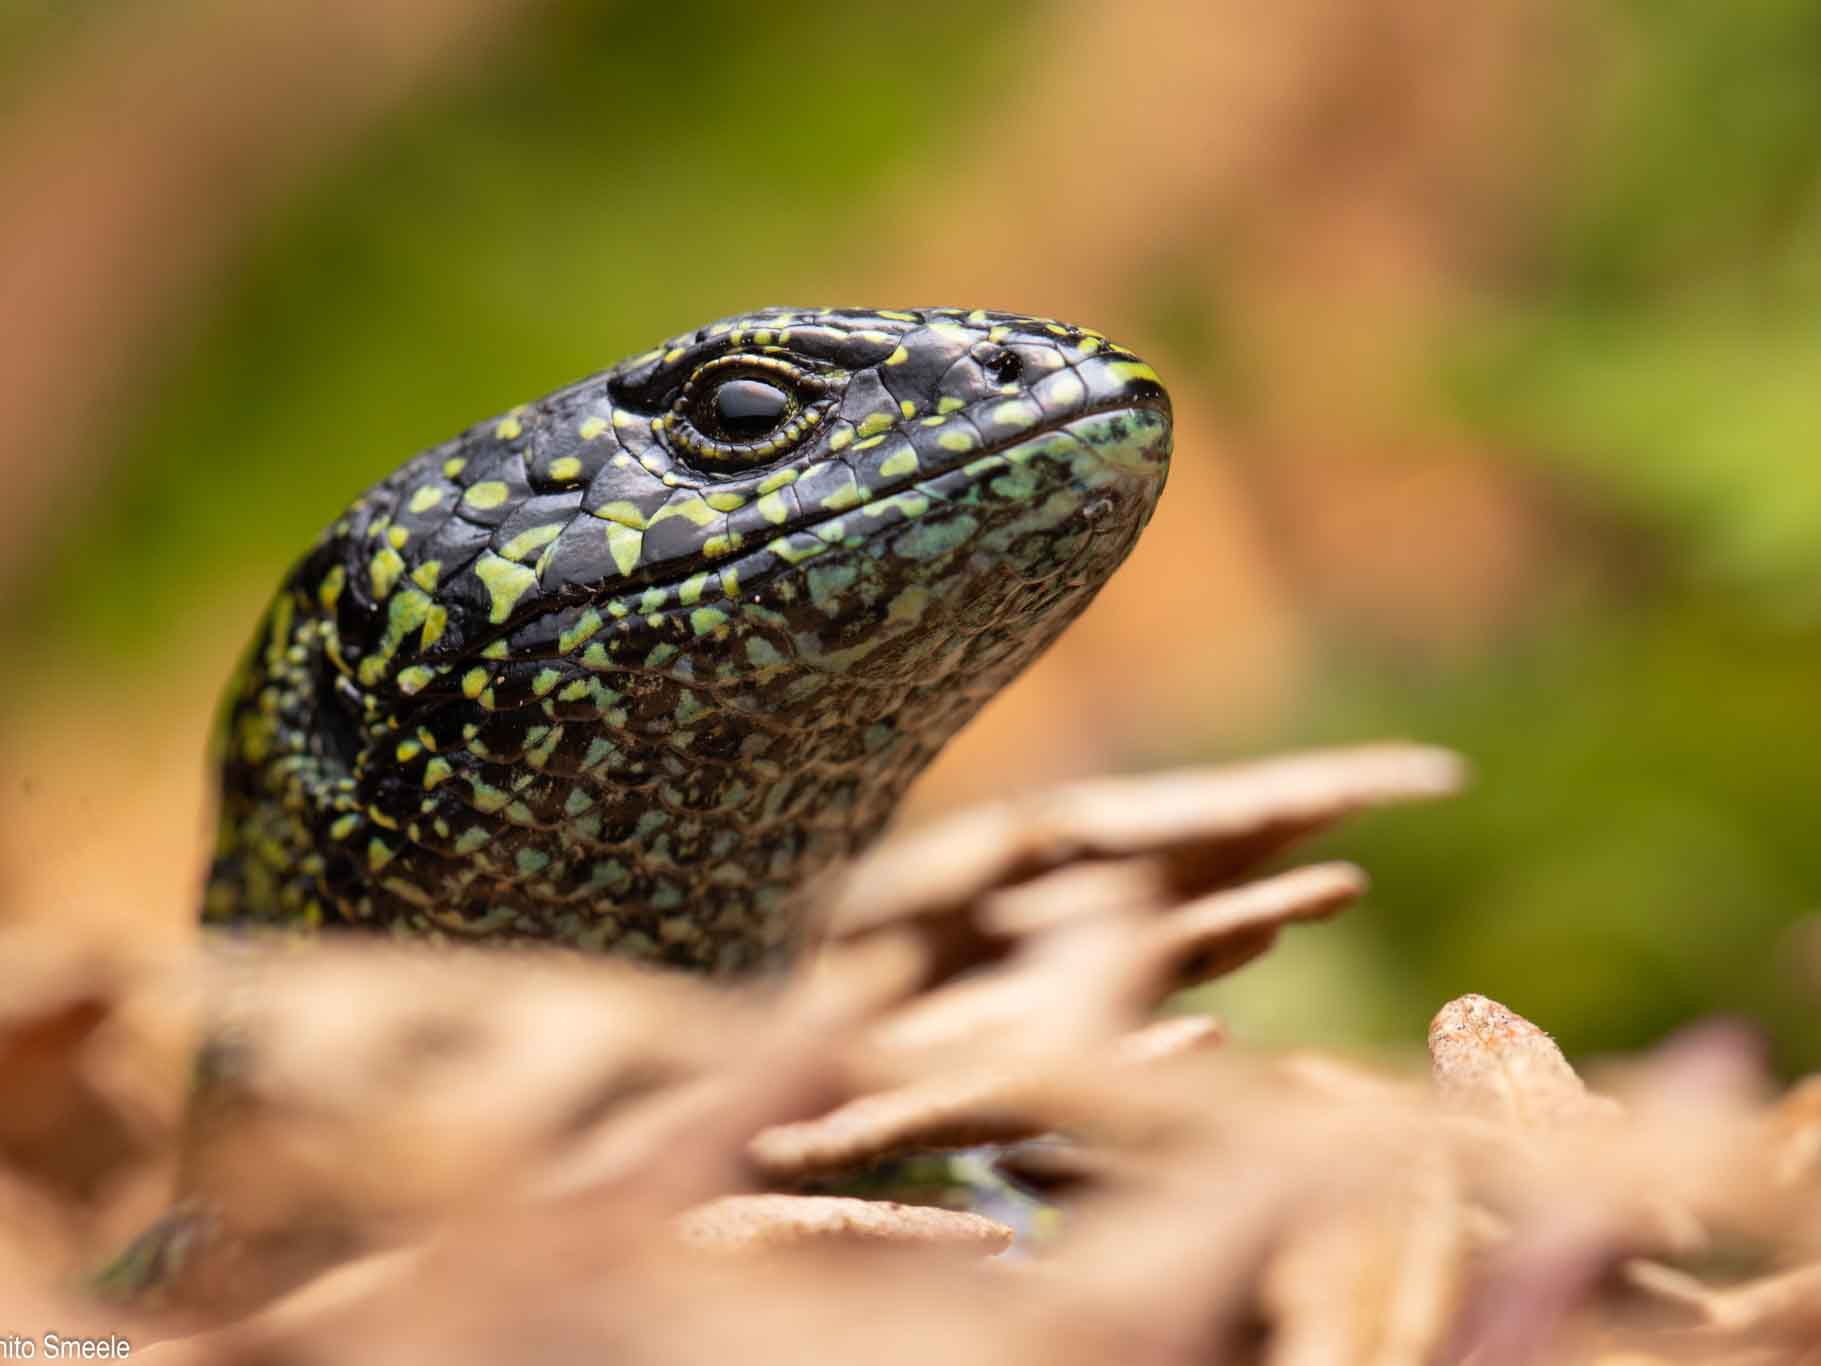 Abronia monticola lizard in Costa Rica